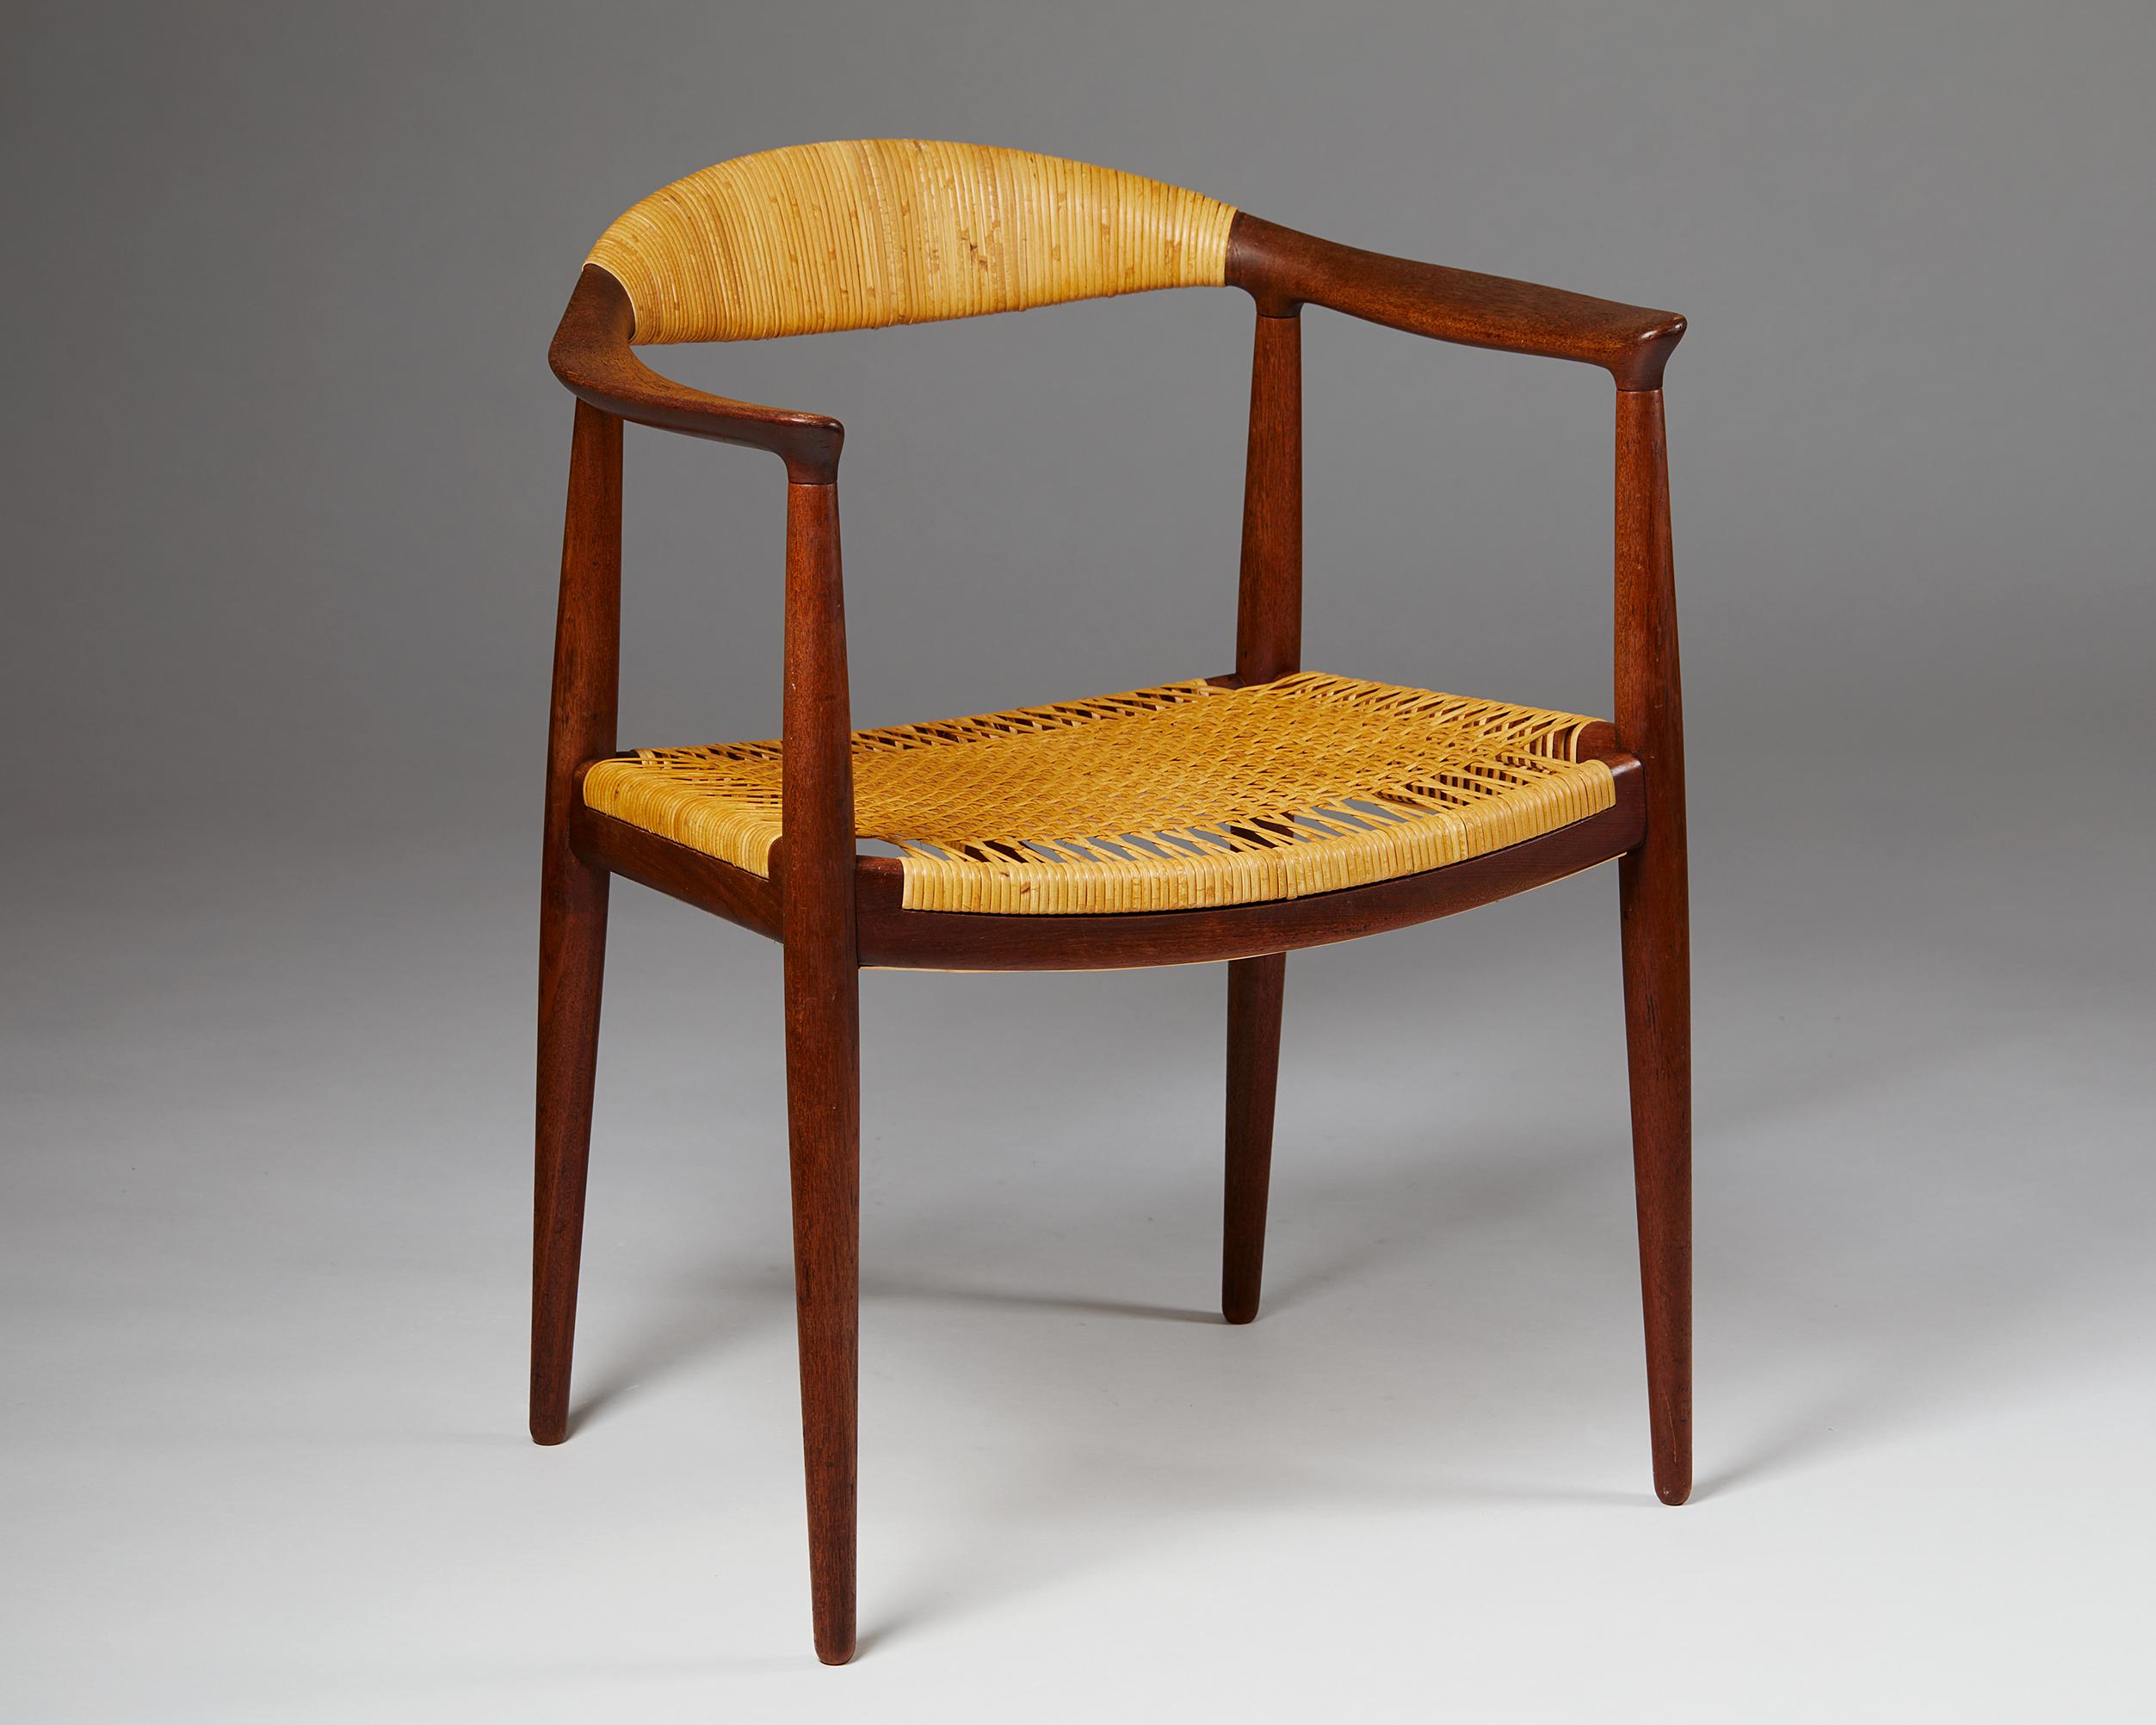 Scandinavian Modern Armchair “The Chair”, Designed by Hans Wegner for Johannes Hansen, Denmark, 1949